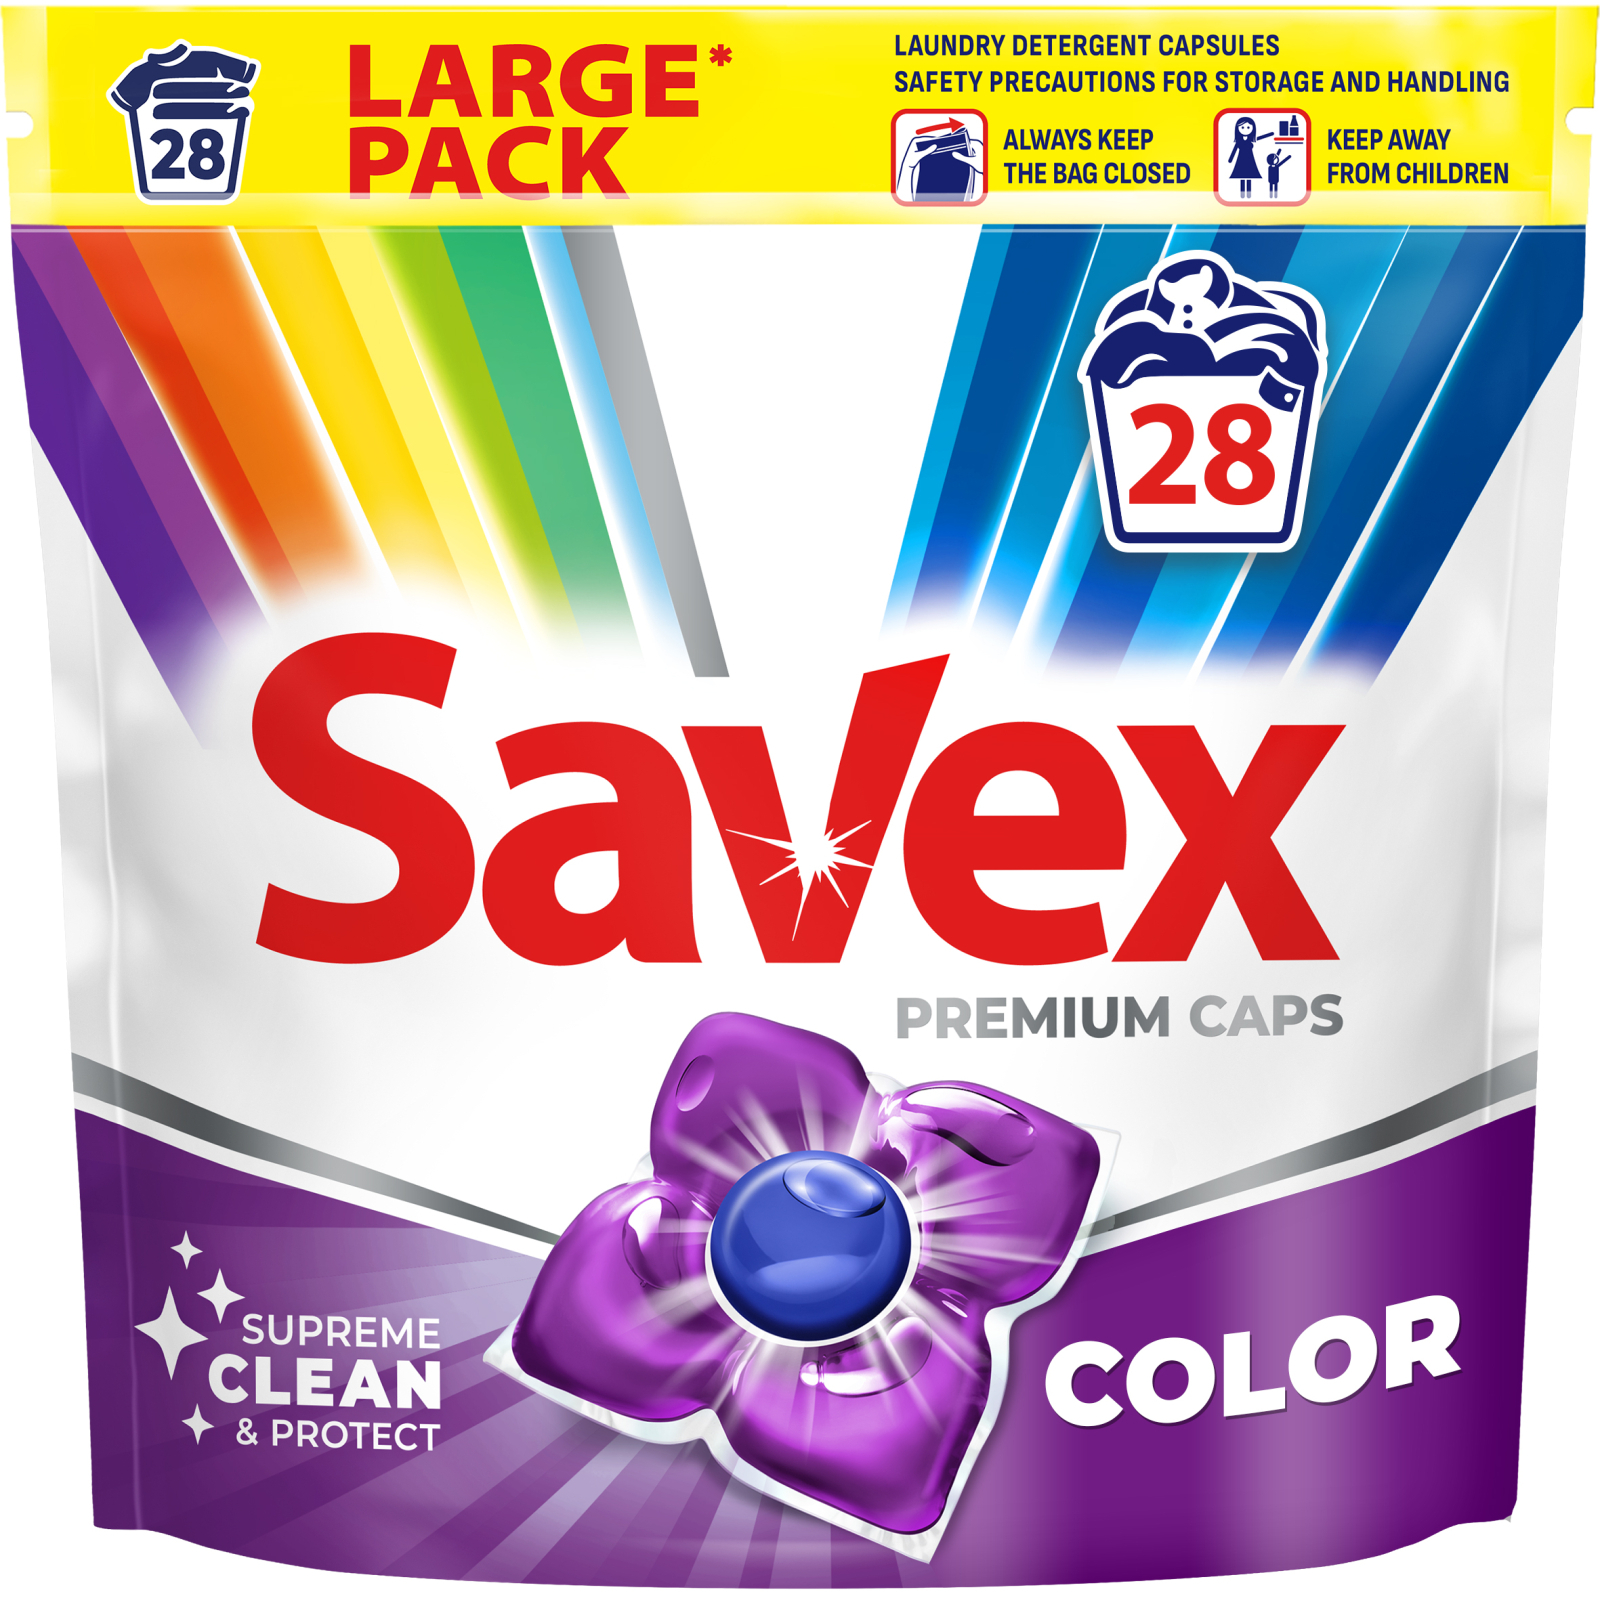 Капсулы для стирки Savex Super Caps Color 28 шт. (3800024046889)